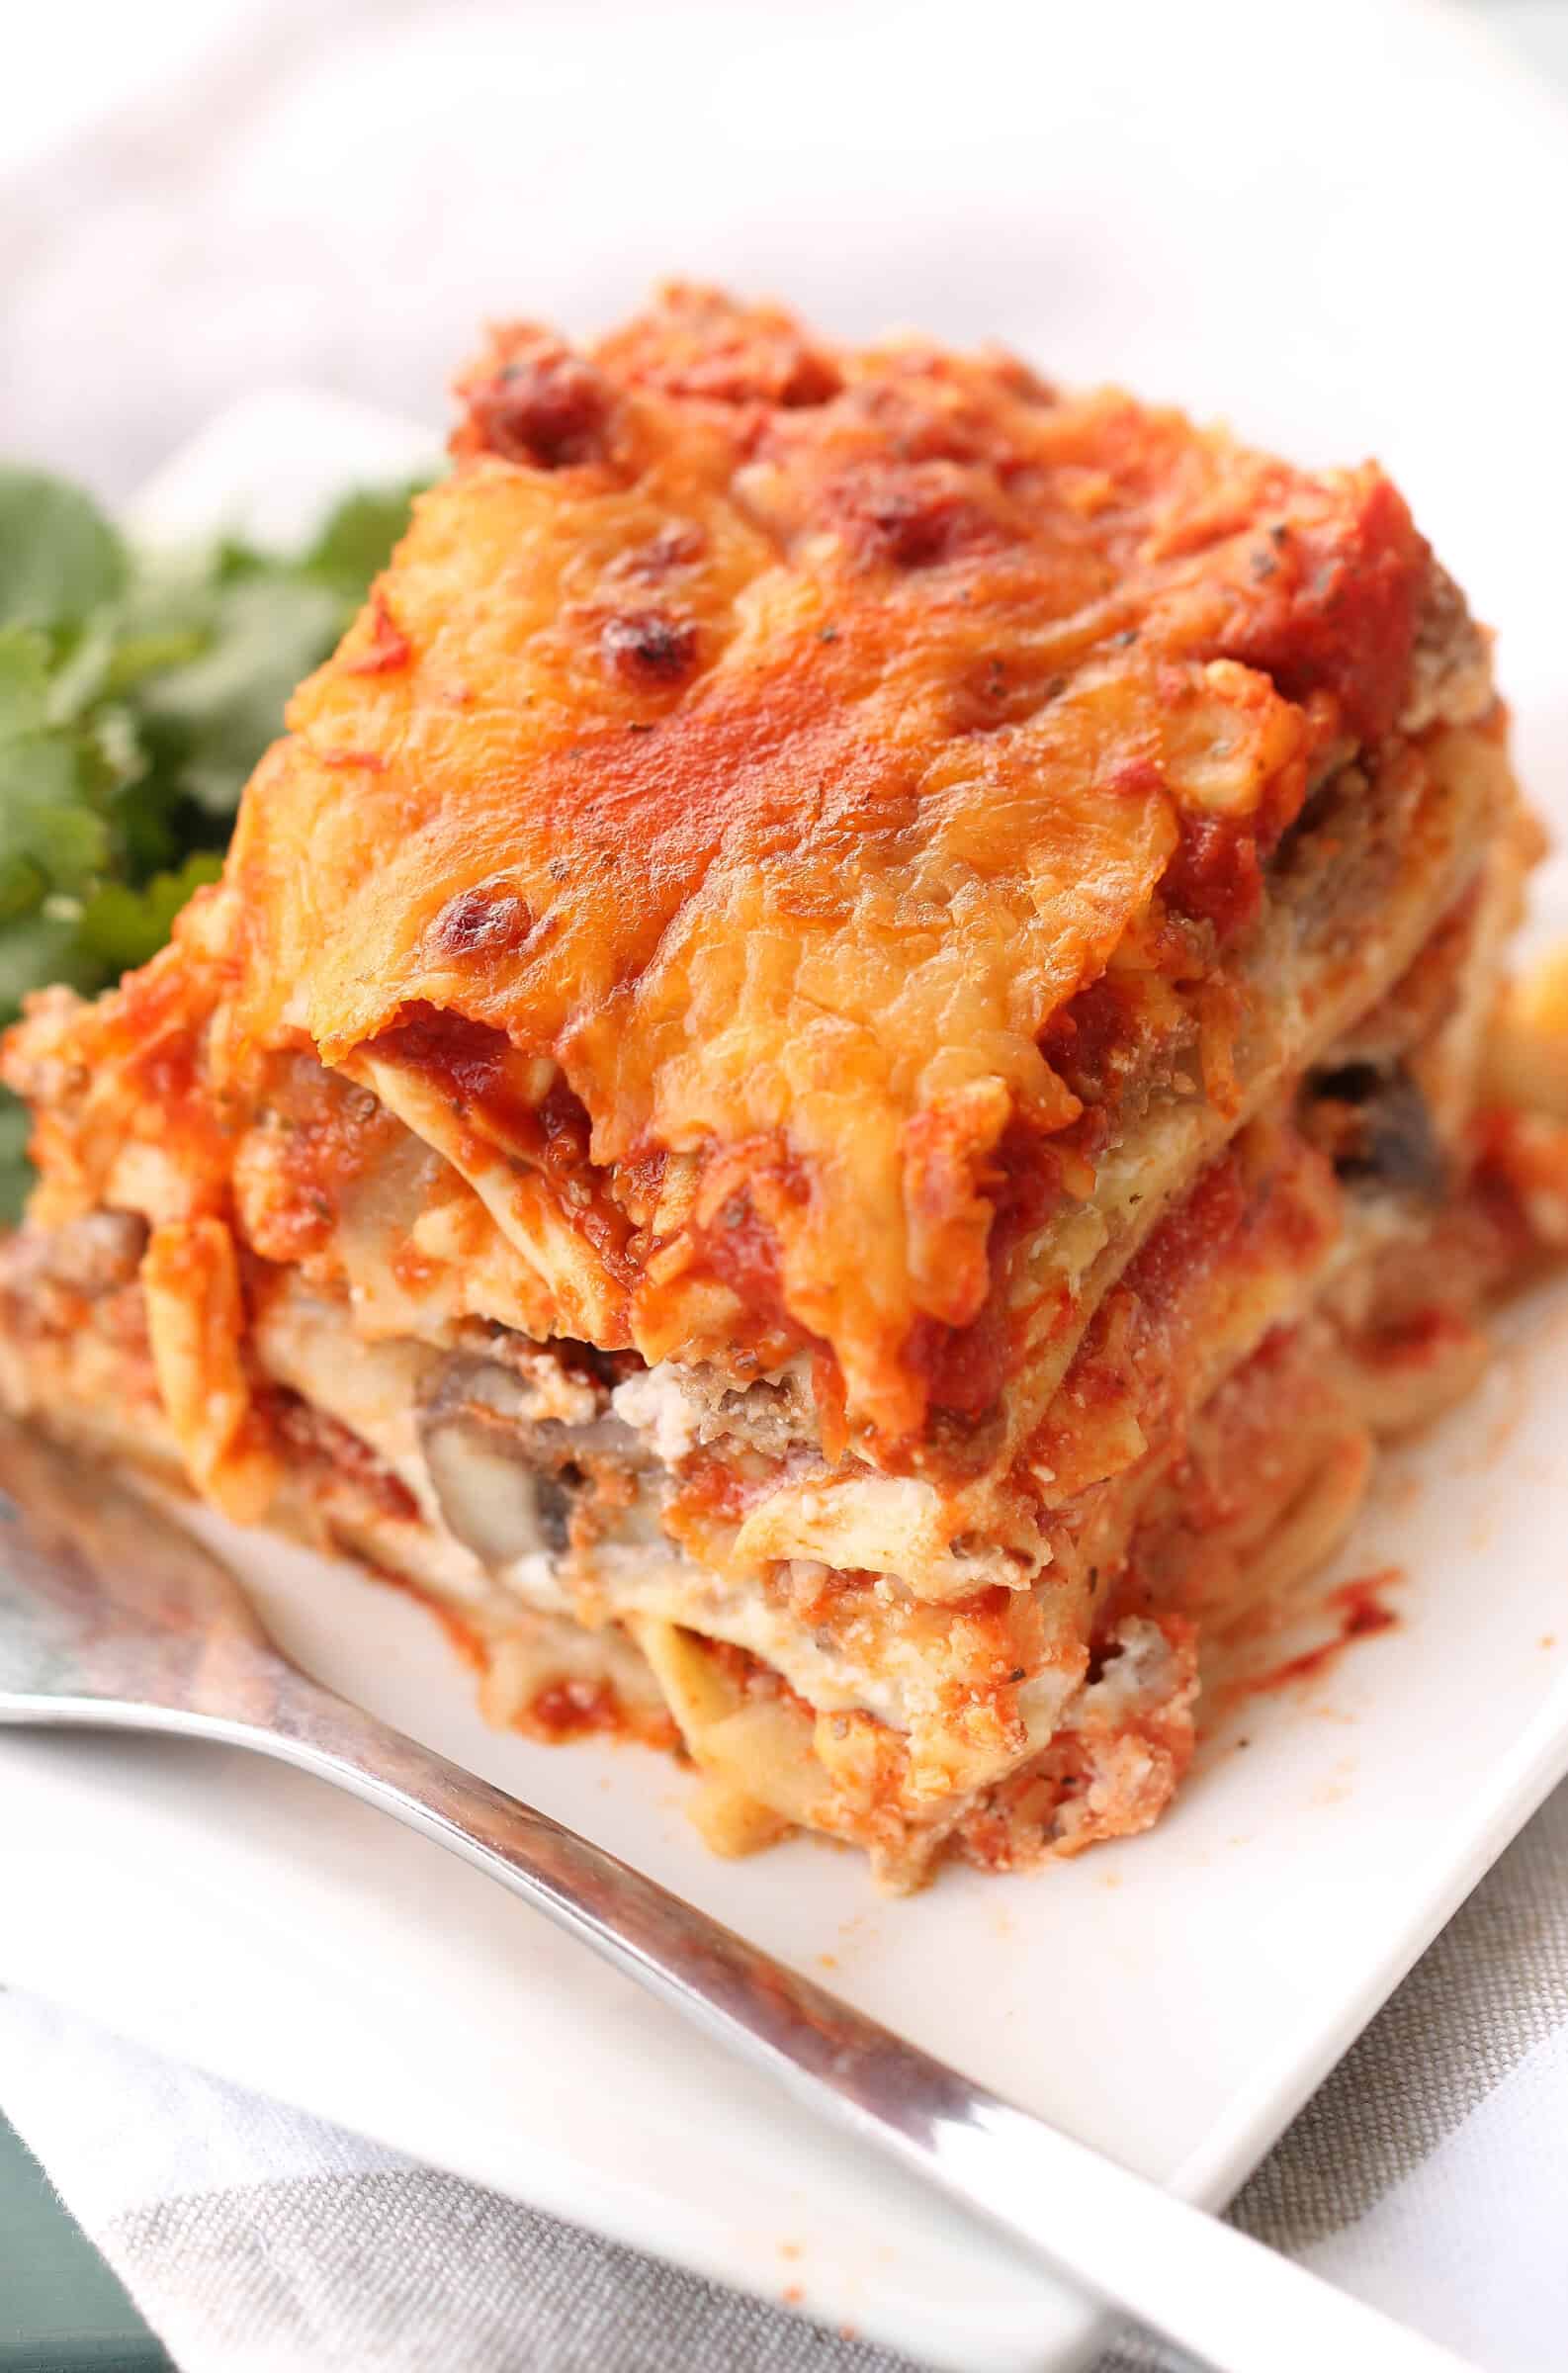 https://www.sixsistersstuff.com/wp-content/uploads/2019/12/Lasagna-Pot-in-Pot-no-bake-finished-lasagna_.jpg